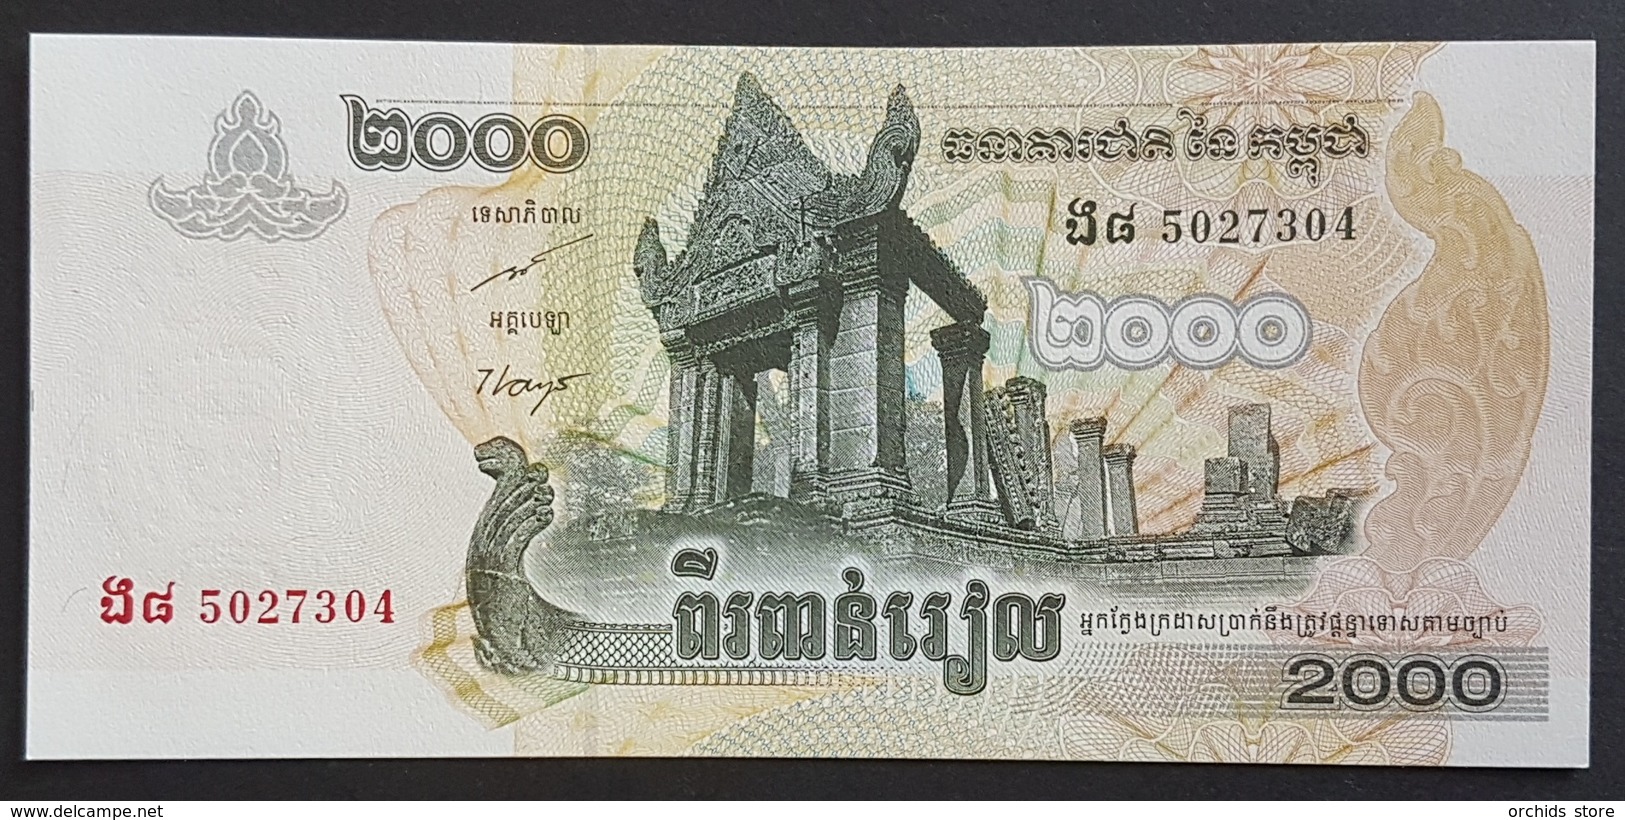 MI0514 - Cambodia 2000 Riels Banknote 2007 UNC - Cambodia